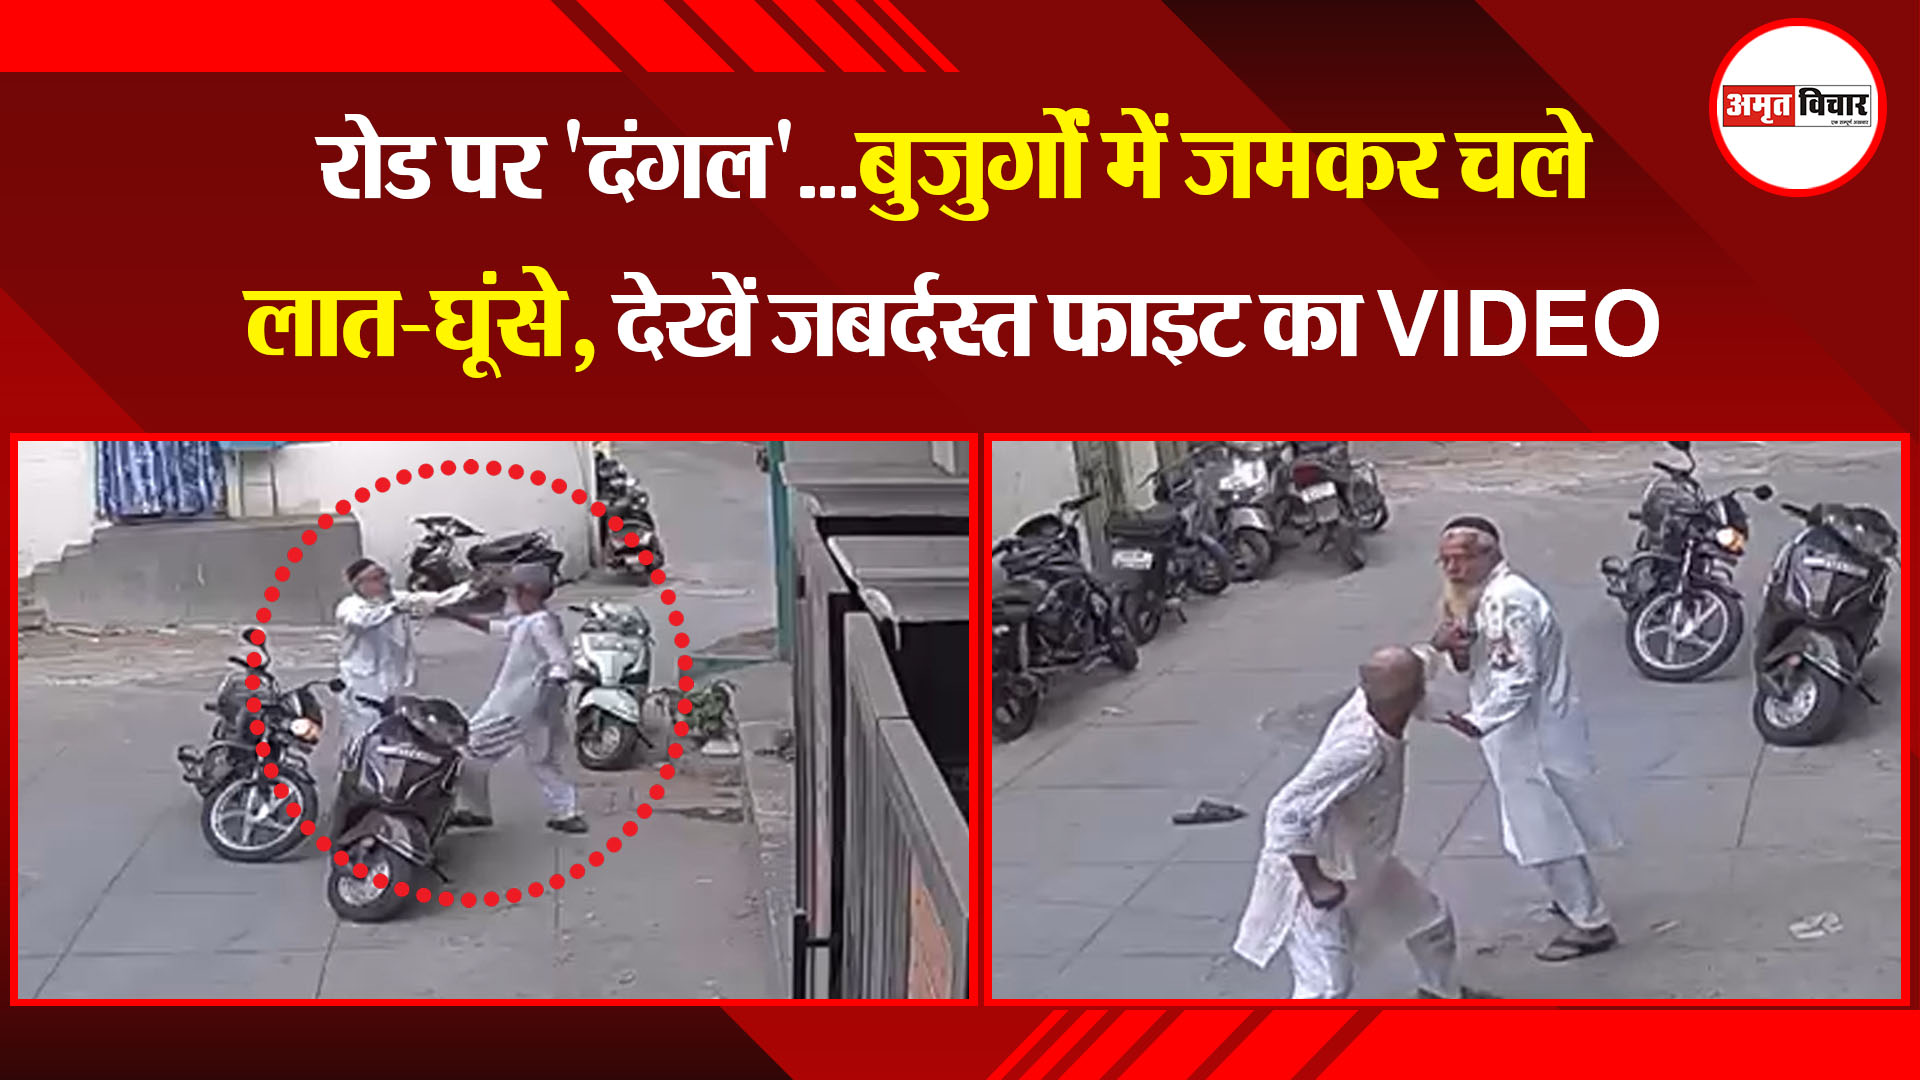 मुरादाबाद: रोड पर 'दंगल'...बुजुर्गों में जमकर चले लात-घूंसे, देखें जबर्दस्त फाइट का VIDEO